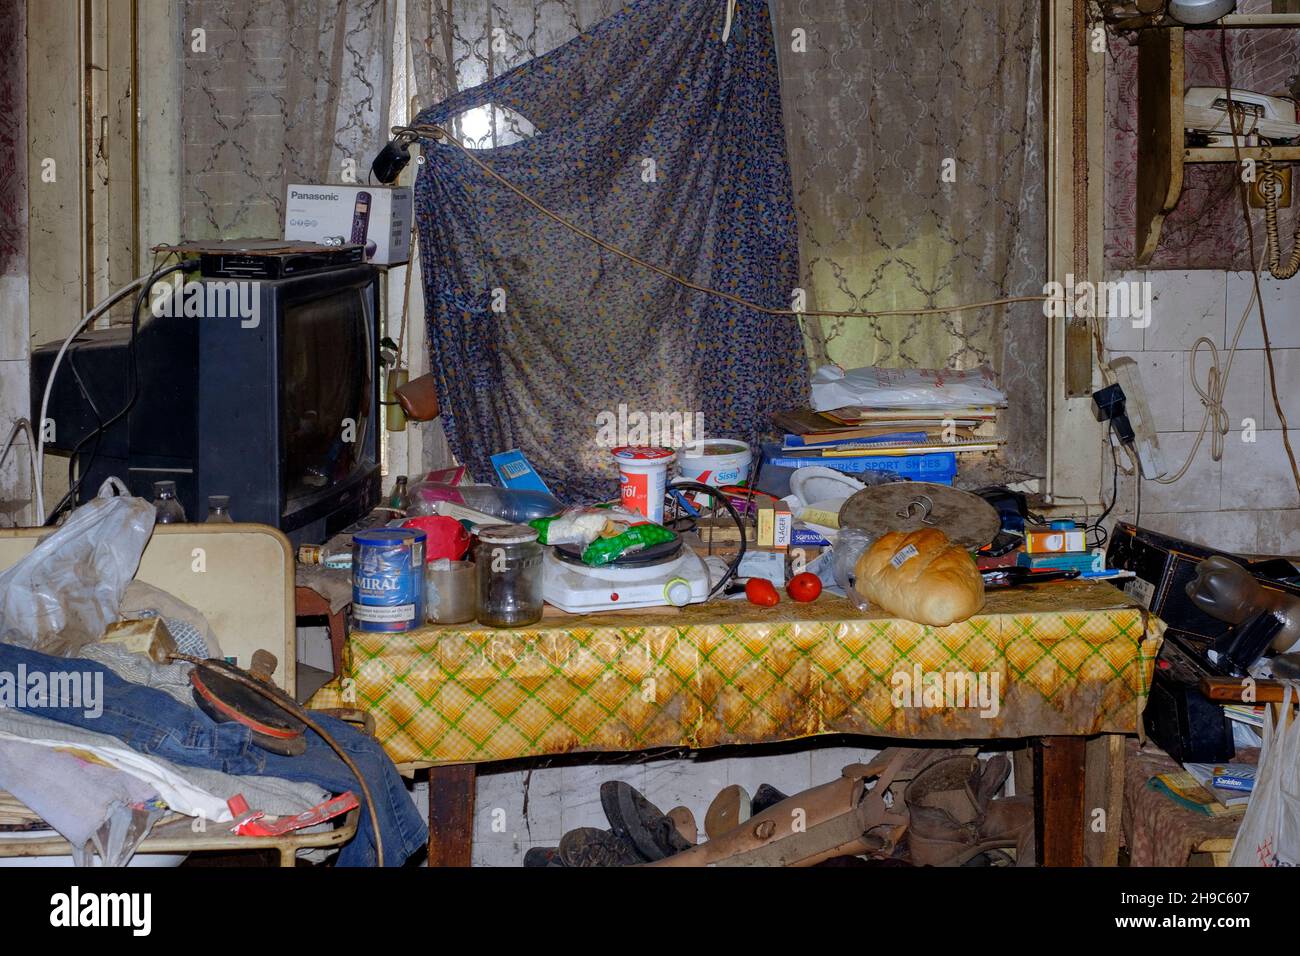 Schmutzig schmutzig, unordentlich, überladen, das innere Wohnzimmer eines verstorbenen Hoarders im Bezirk zala, ungarn Stockfoto